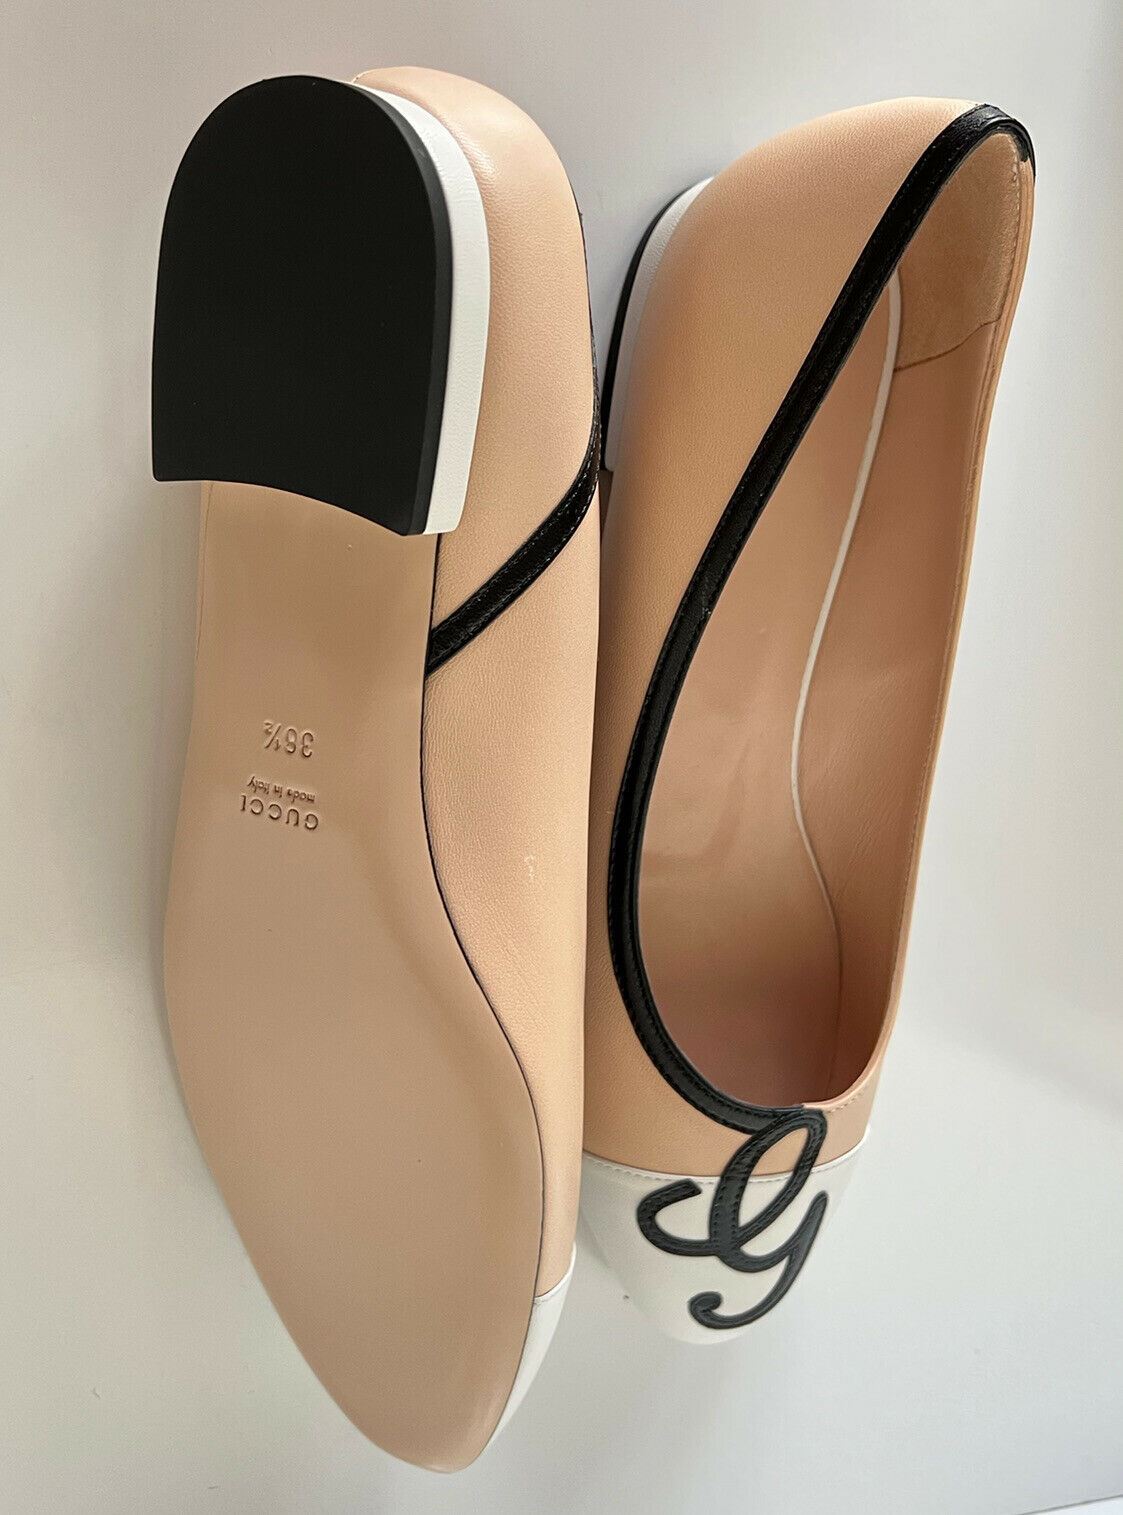 Женские кожаные туфли-слипоны Gucci на плоской подошве бежевого/белого цвета стоимостью 750 долларов США 9,5 США (39,5 ЕС) 658904